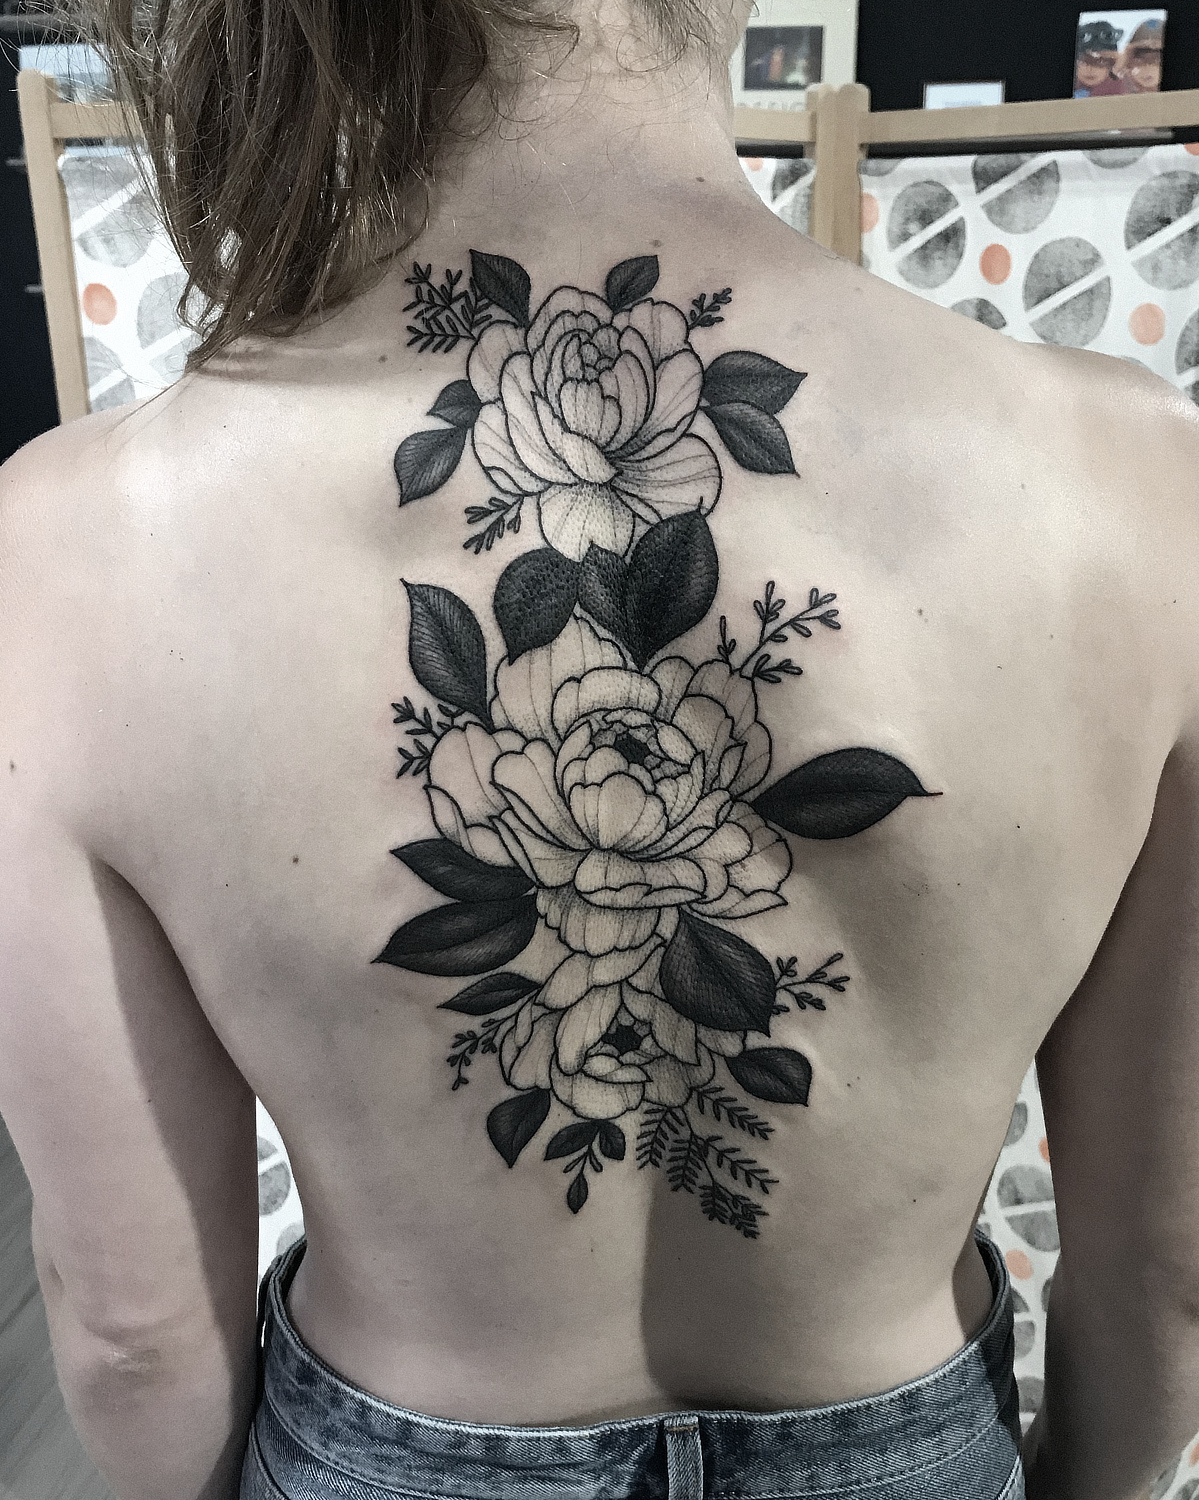 tatuto-pivoines-coverup-recouvrement-tatouage-floral-bordeaux-peonies